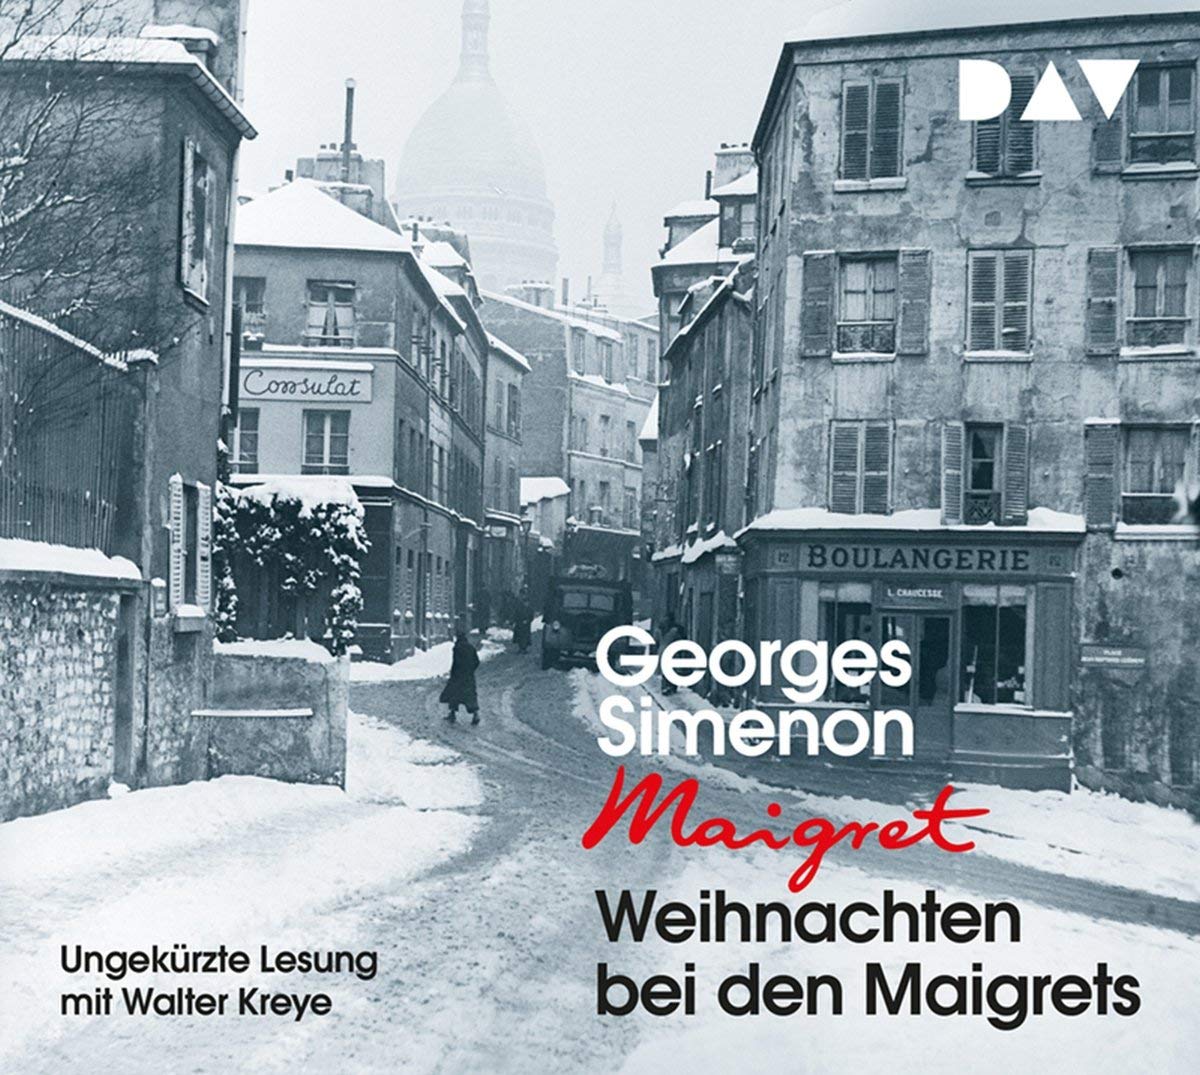 Hörbuch: Weihnachten bei den Maigrets